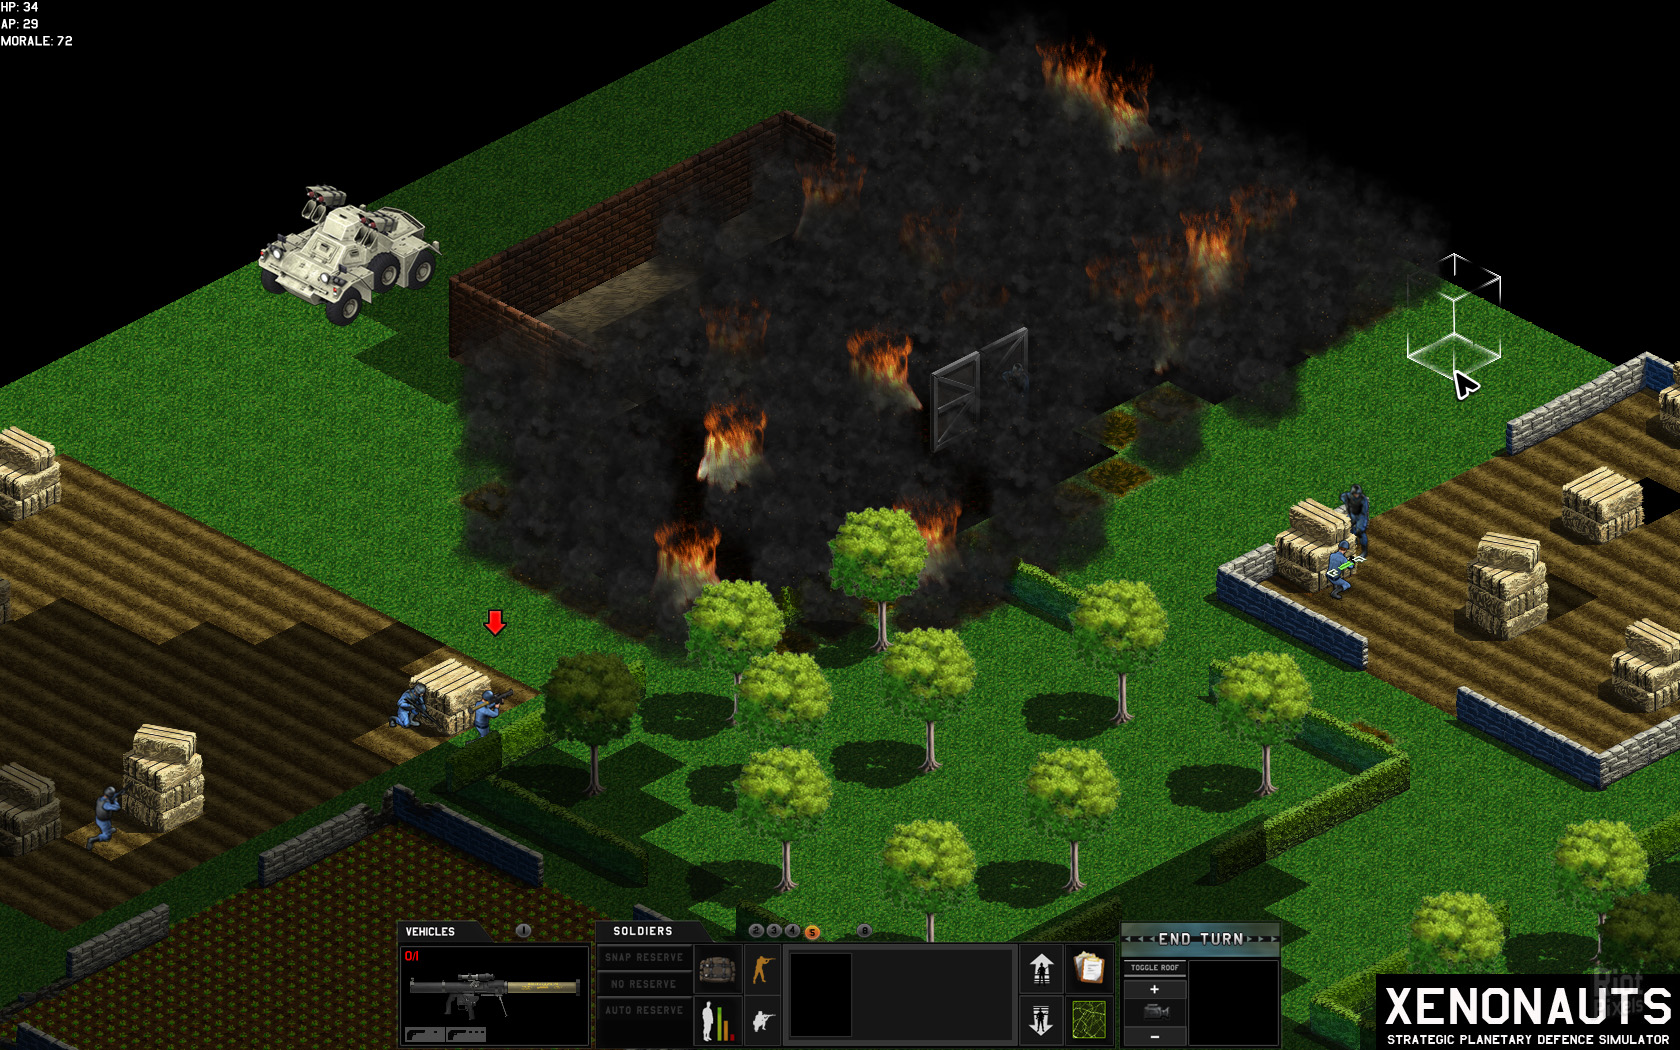 Xenonauts Game Screenshots At Riot Pixels Images